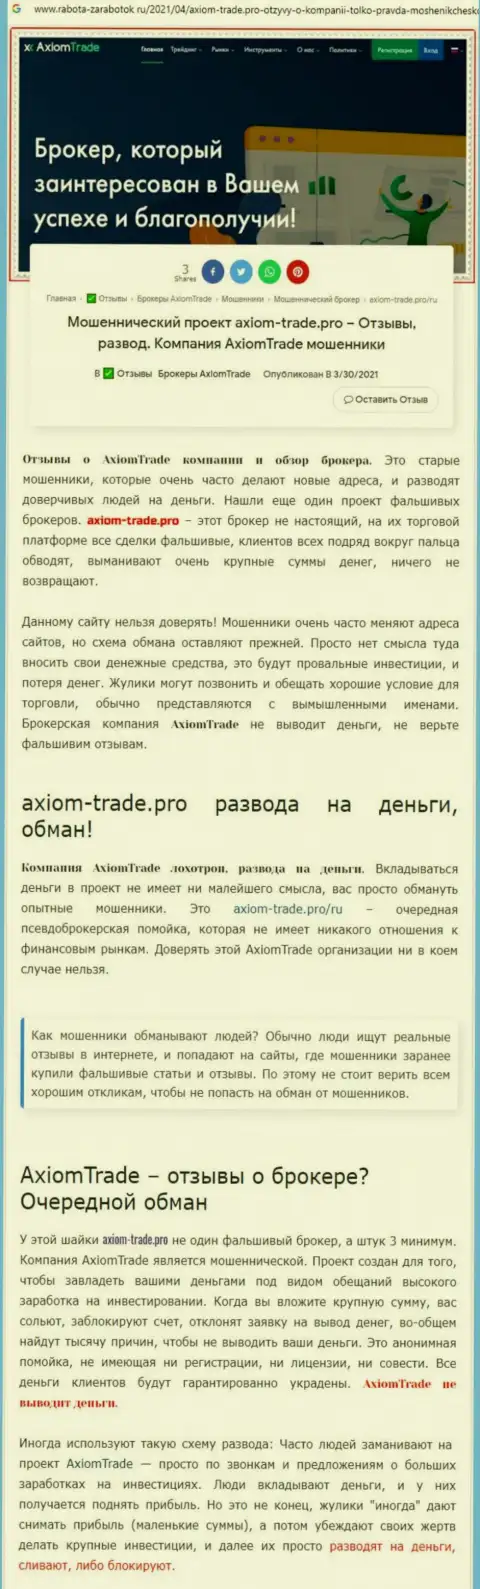 В компании Axiom Trade обманывают - свидетельства неправомерных комбинаций (обзор компании)